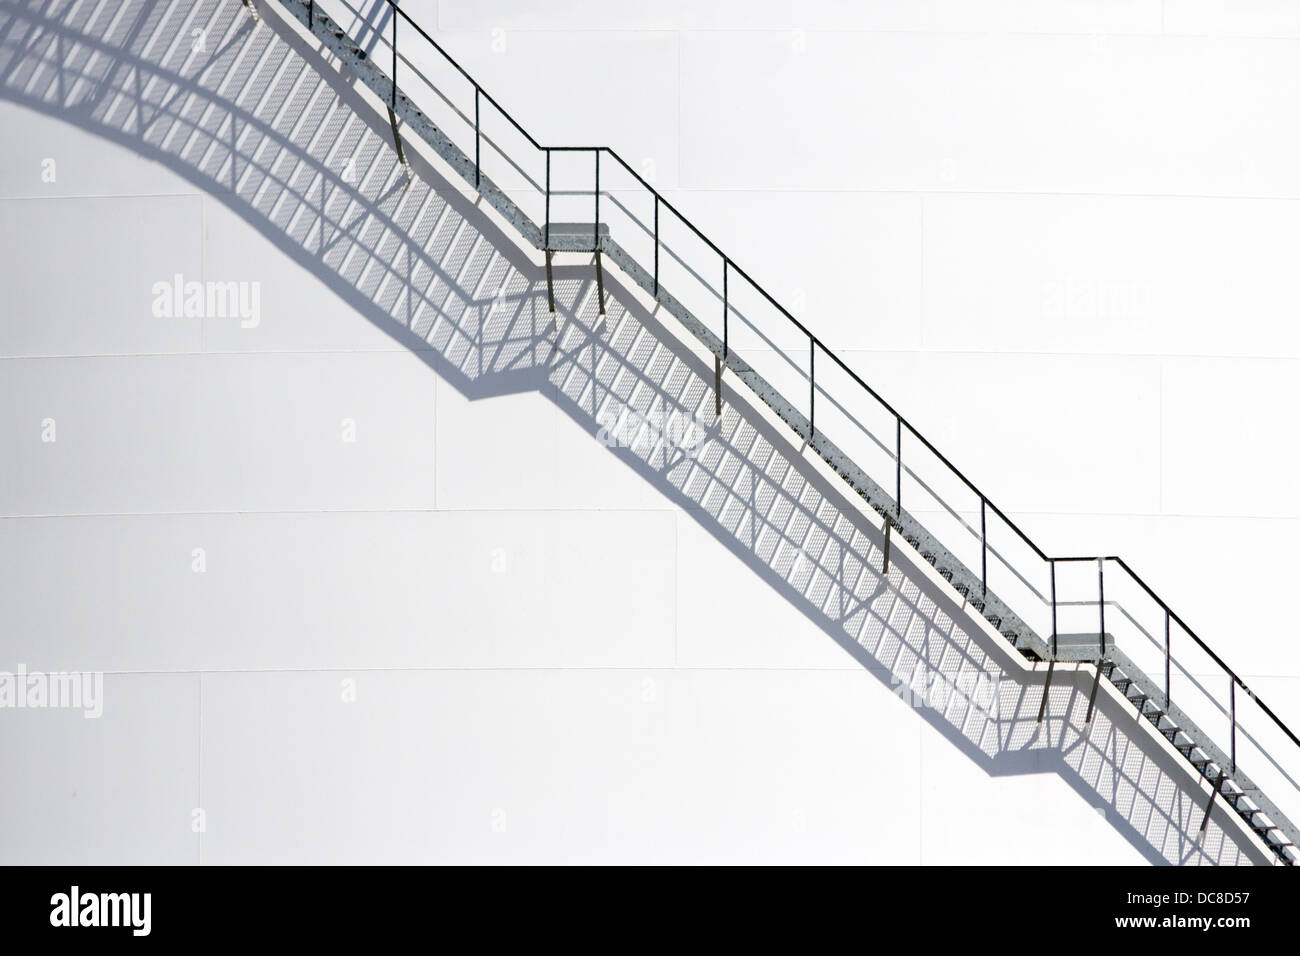 Les escaliers d'un silo de stockage Banque D'Images